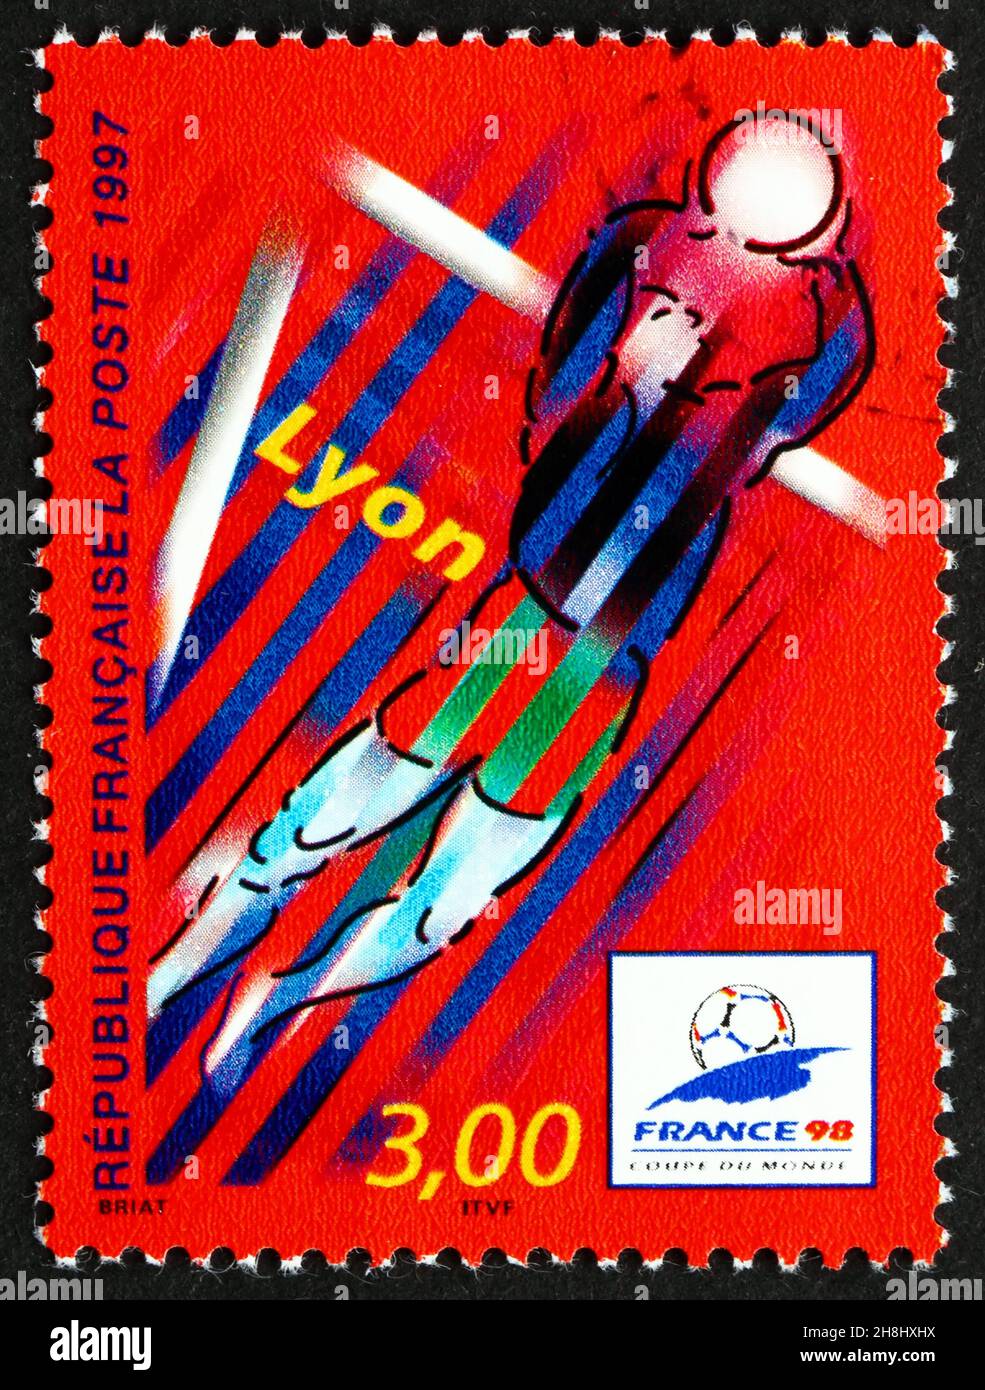 FRANKREICH - UM 1997: Eine in Frankreich gedruckte Marke zeigt Lyon, Austragungsort der Fußball-WM 1998, stilisierte Action-Szene, um 1997 Stockfoto